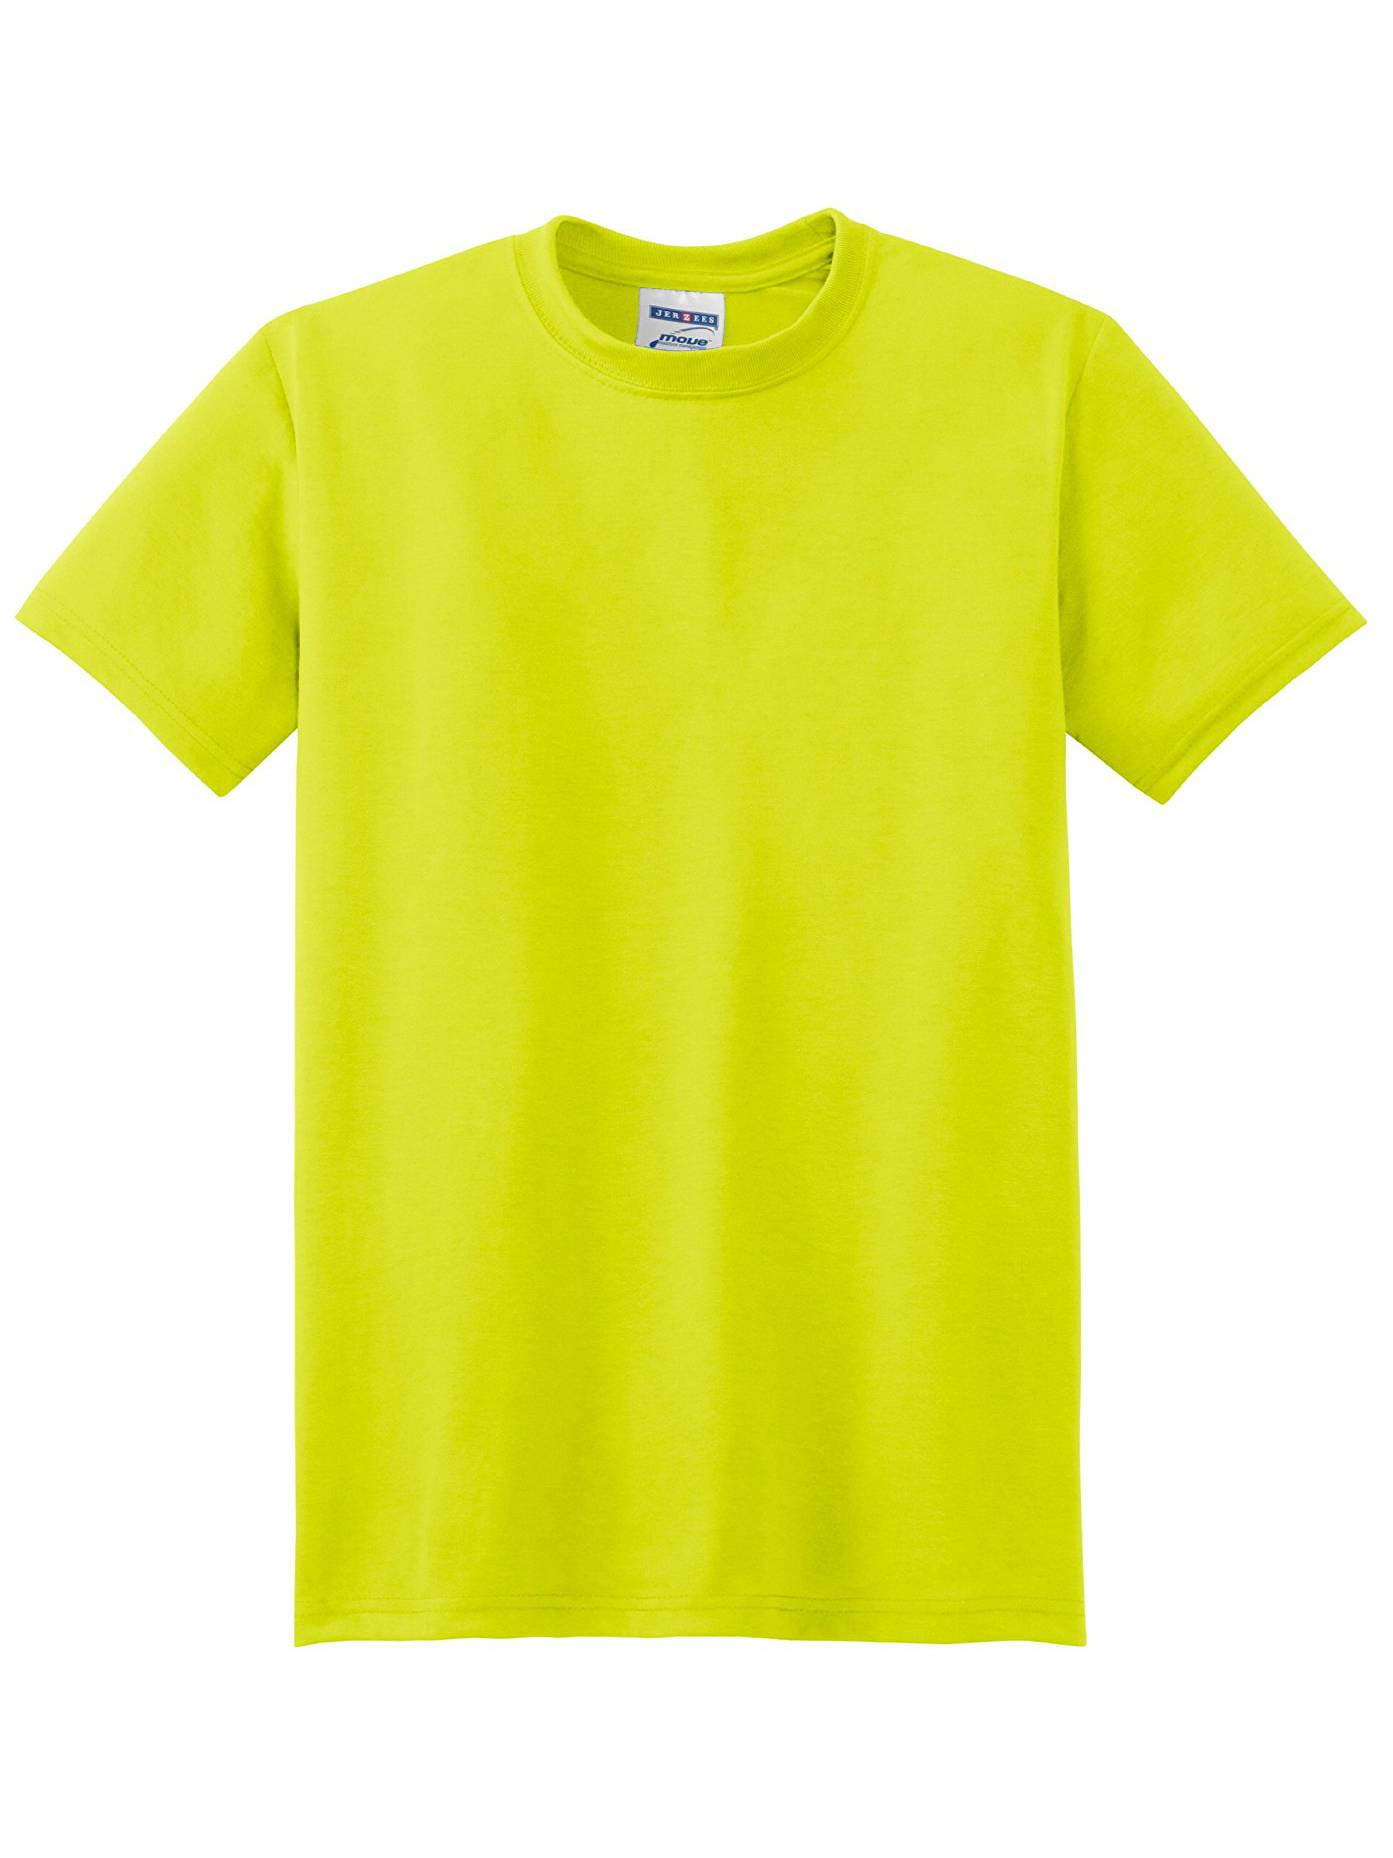 Phil Pitt Steagles Football JERZEES Men's Dri-Power Sport T-shirt